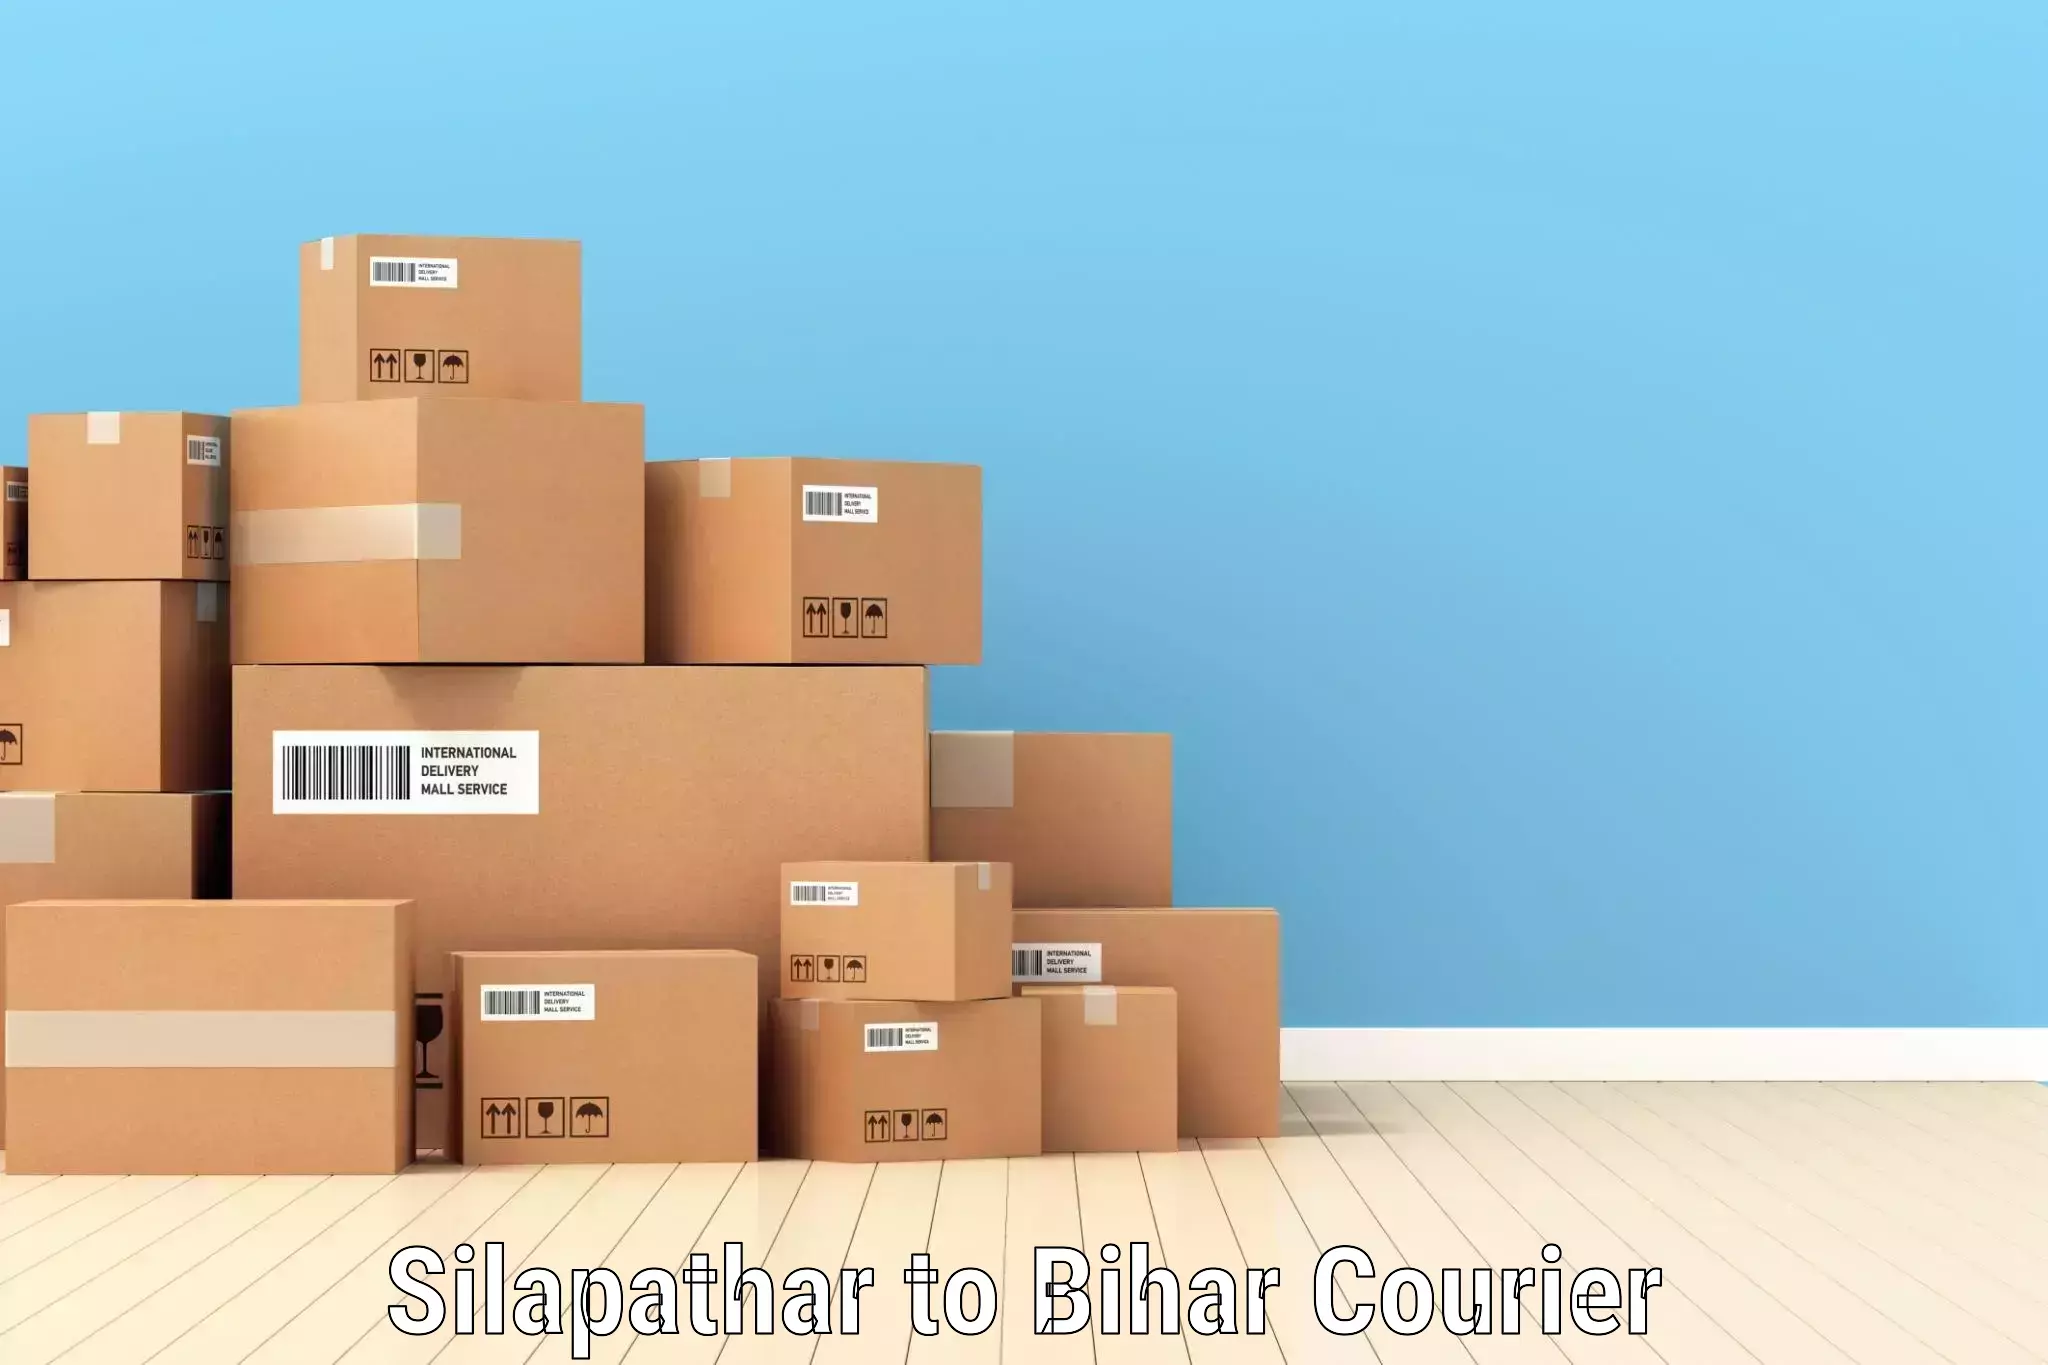 Easy access courier services Silapathar to Khizarsarai